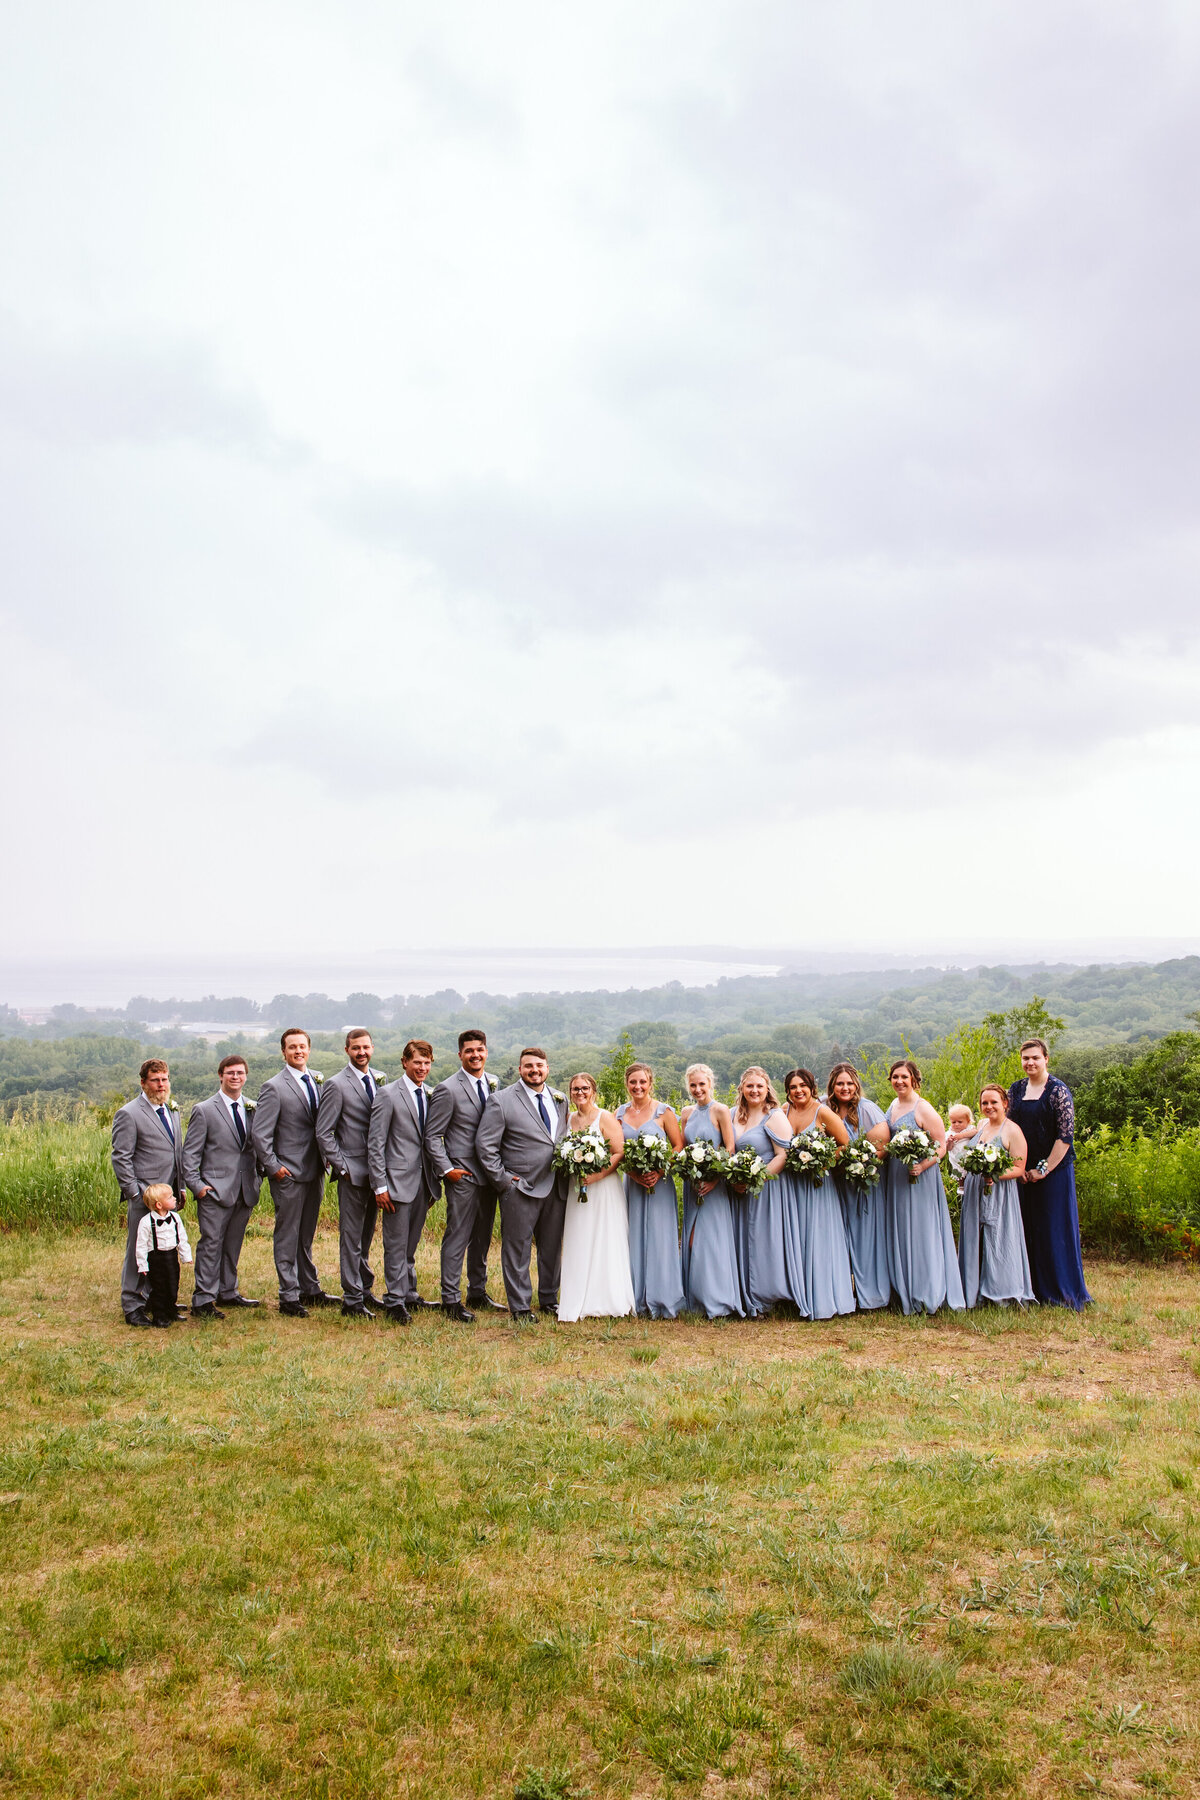 Minnesota-Alyssa Ashley Photography-Emily + Spencer wedding-15